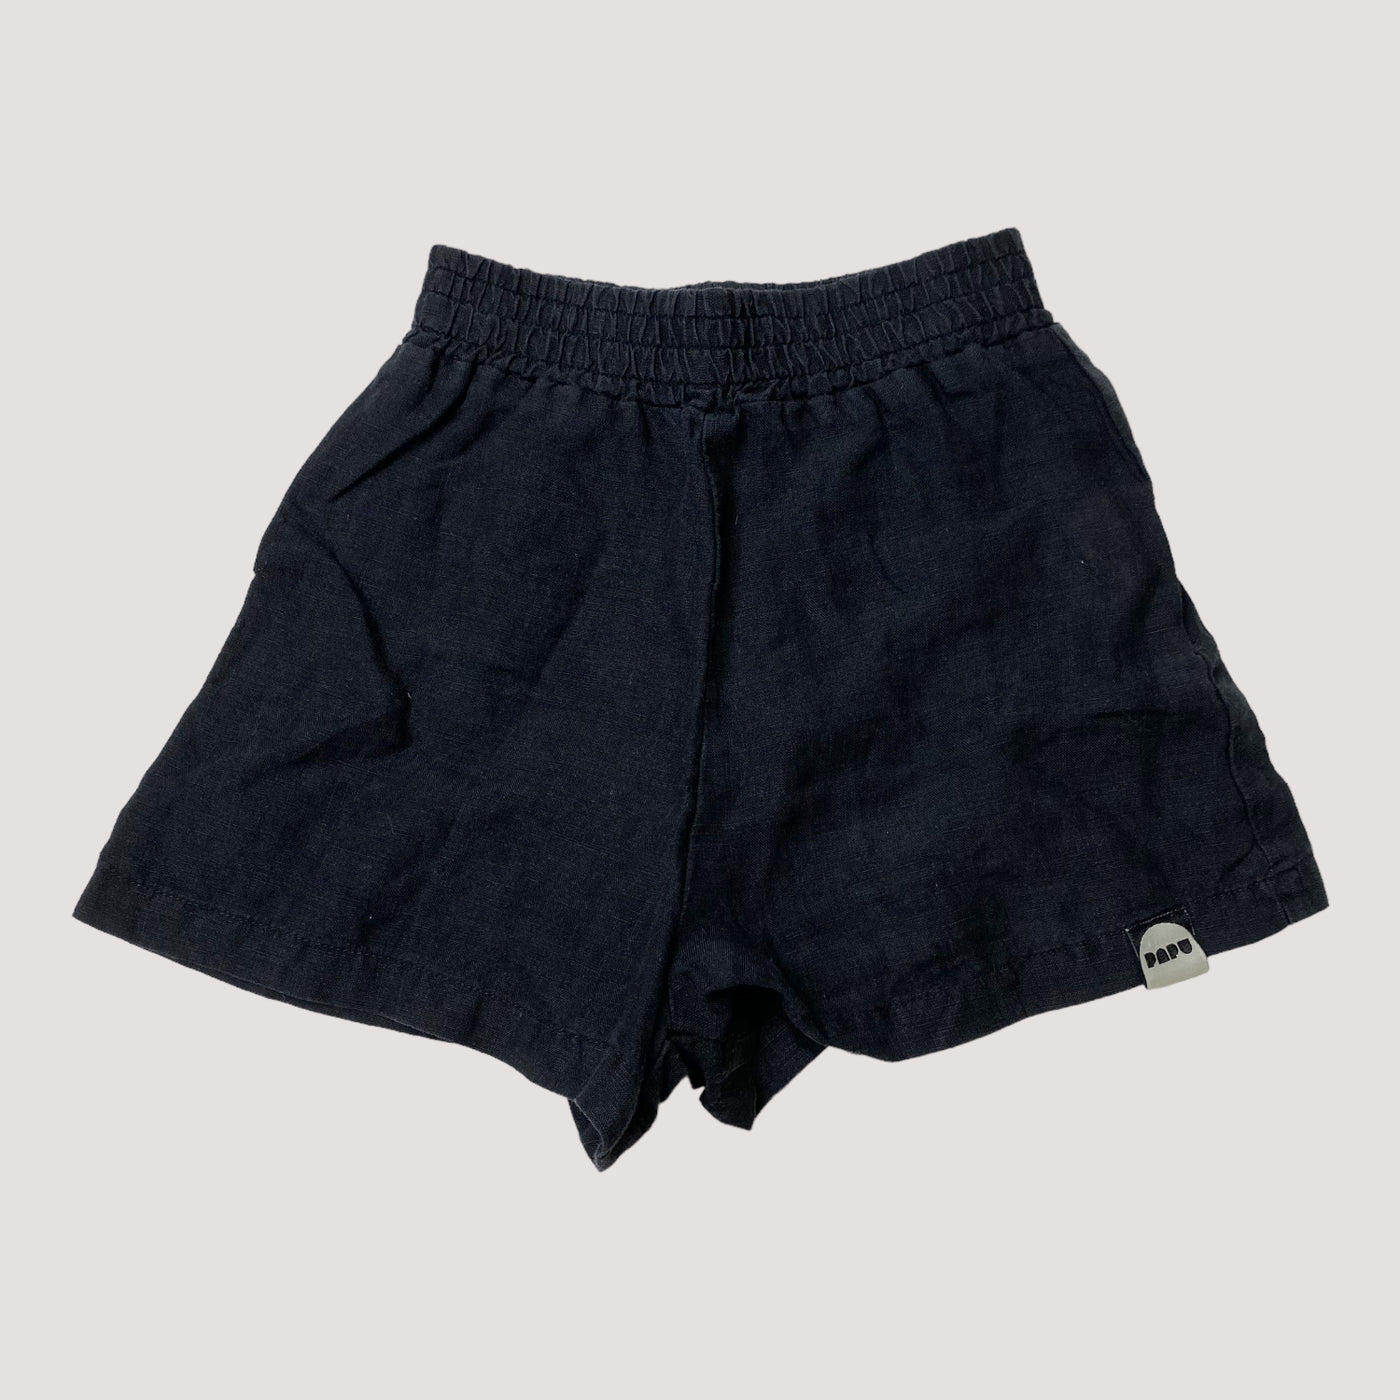 Papu linen shorts, black | 86/92cm